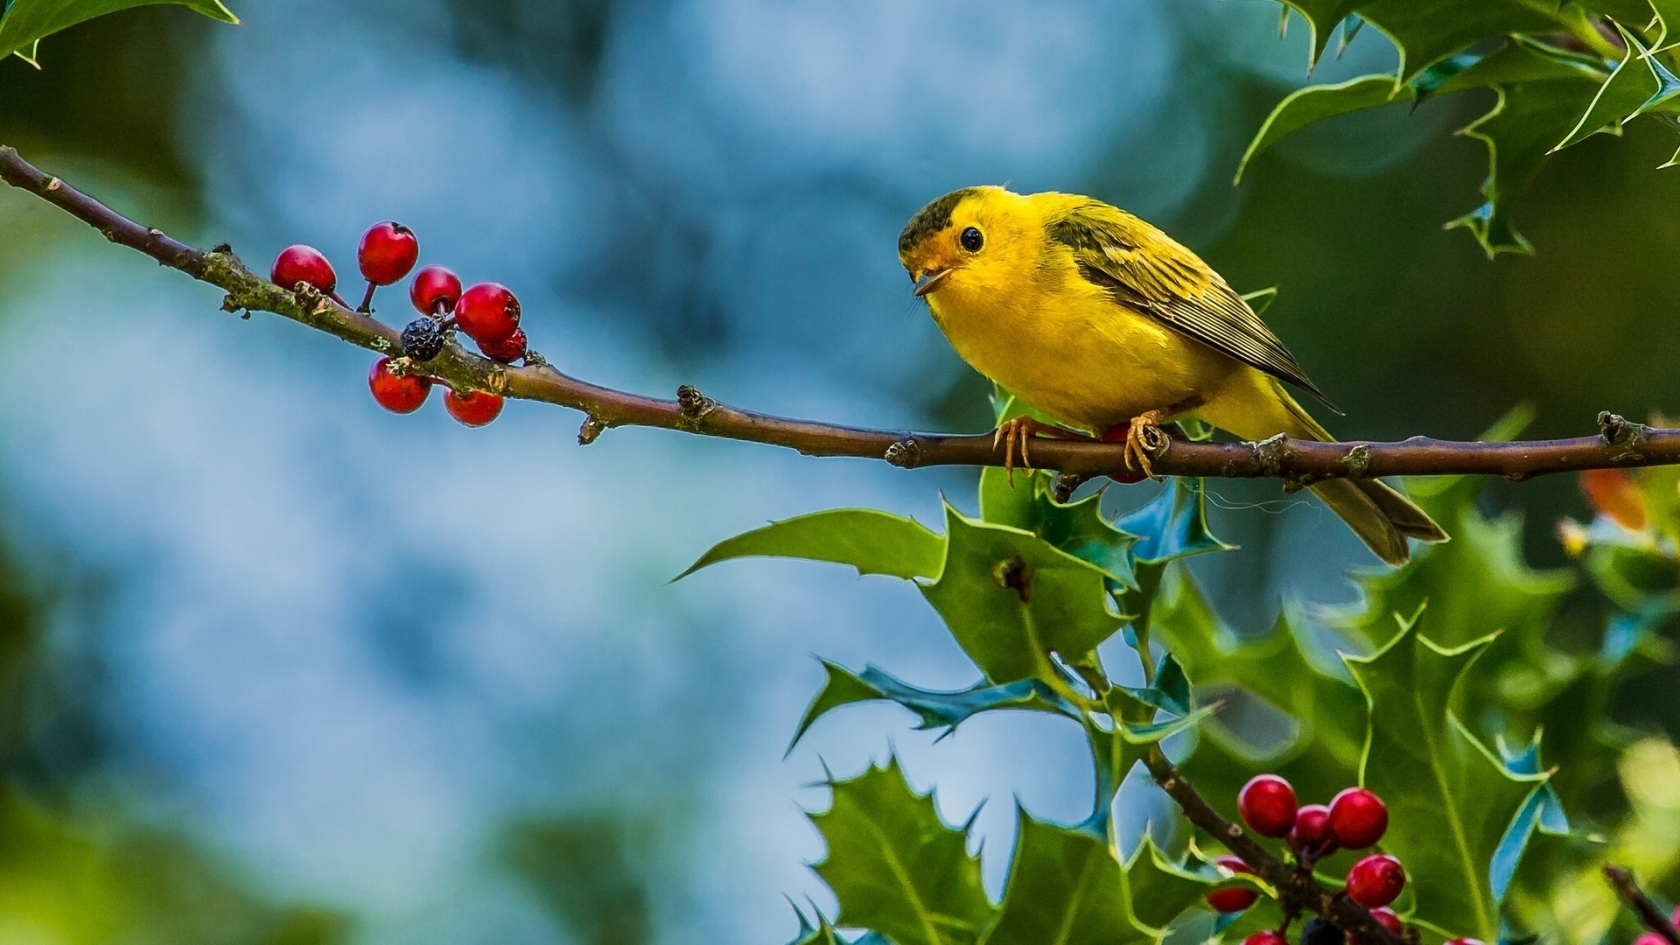 Cute Little Yellow Bird for 1680 x 945 HDTV resolution